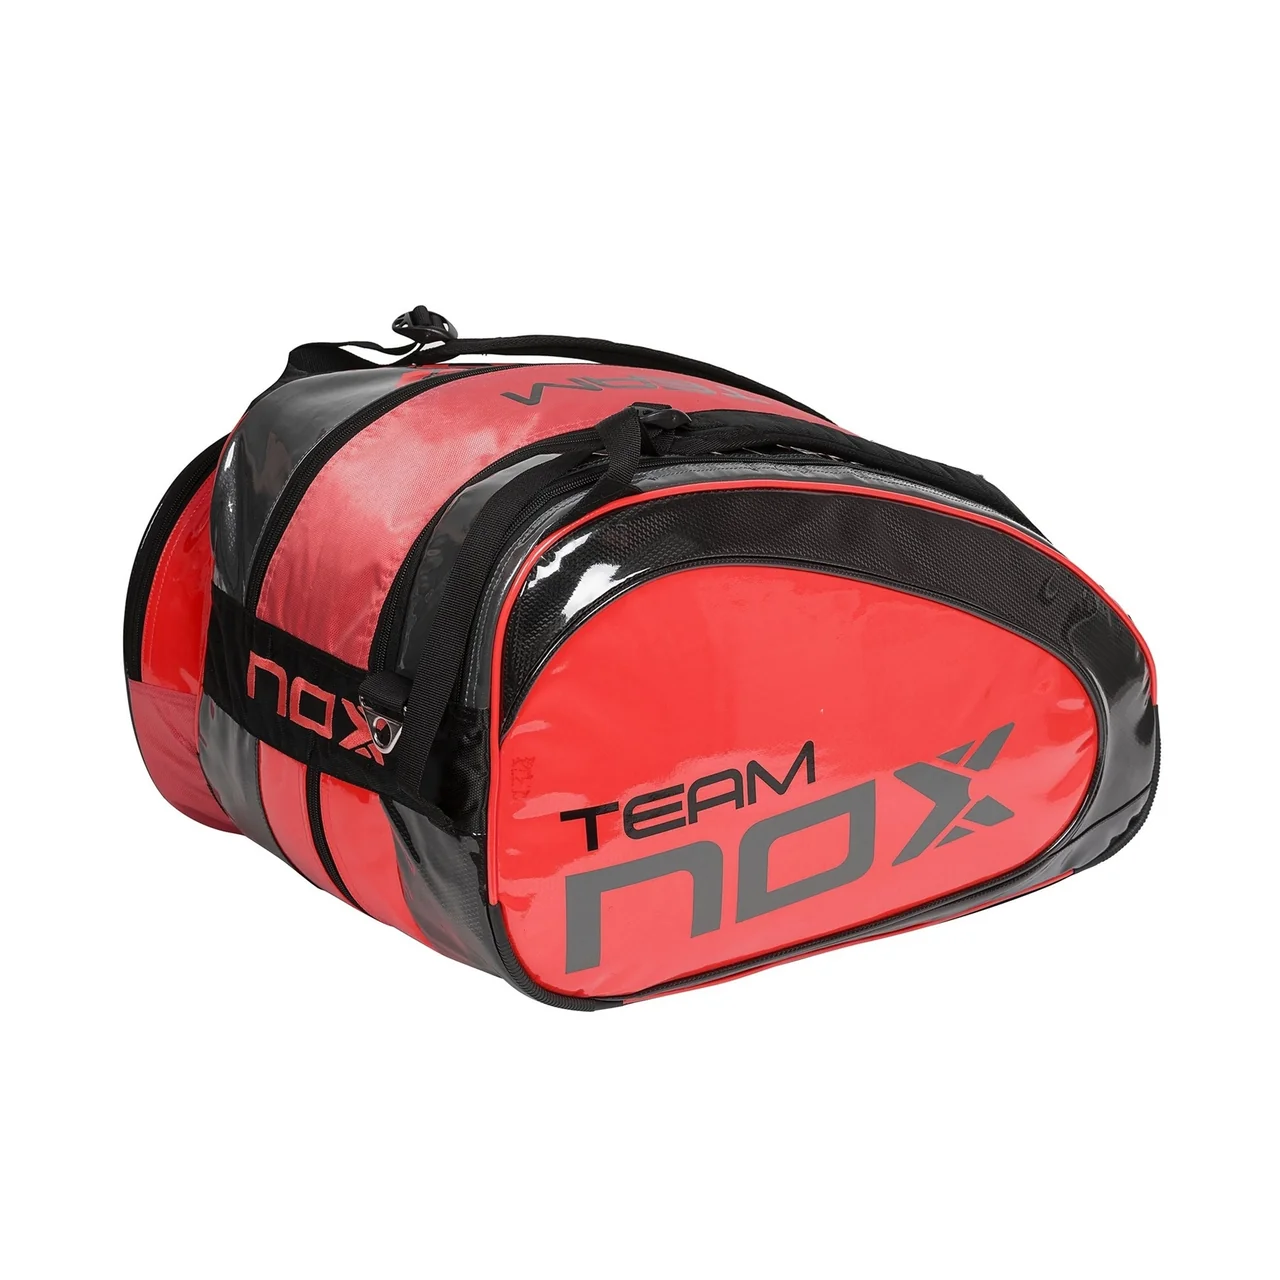 Nox Team Padel Bag Red